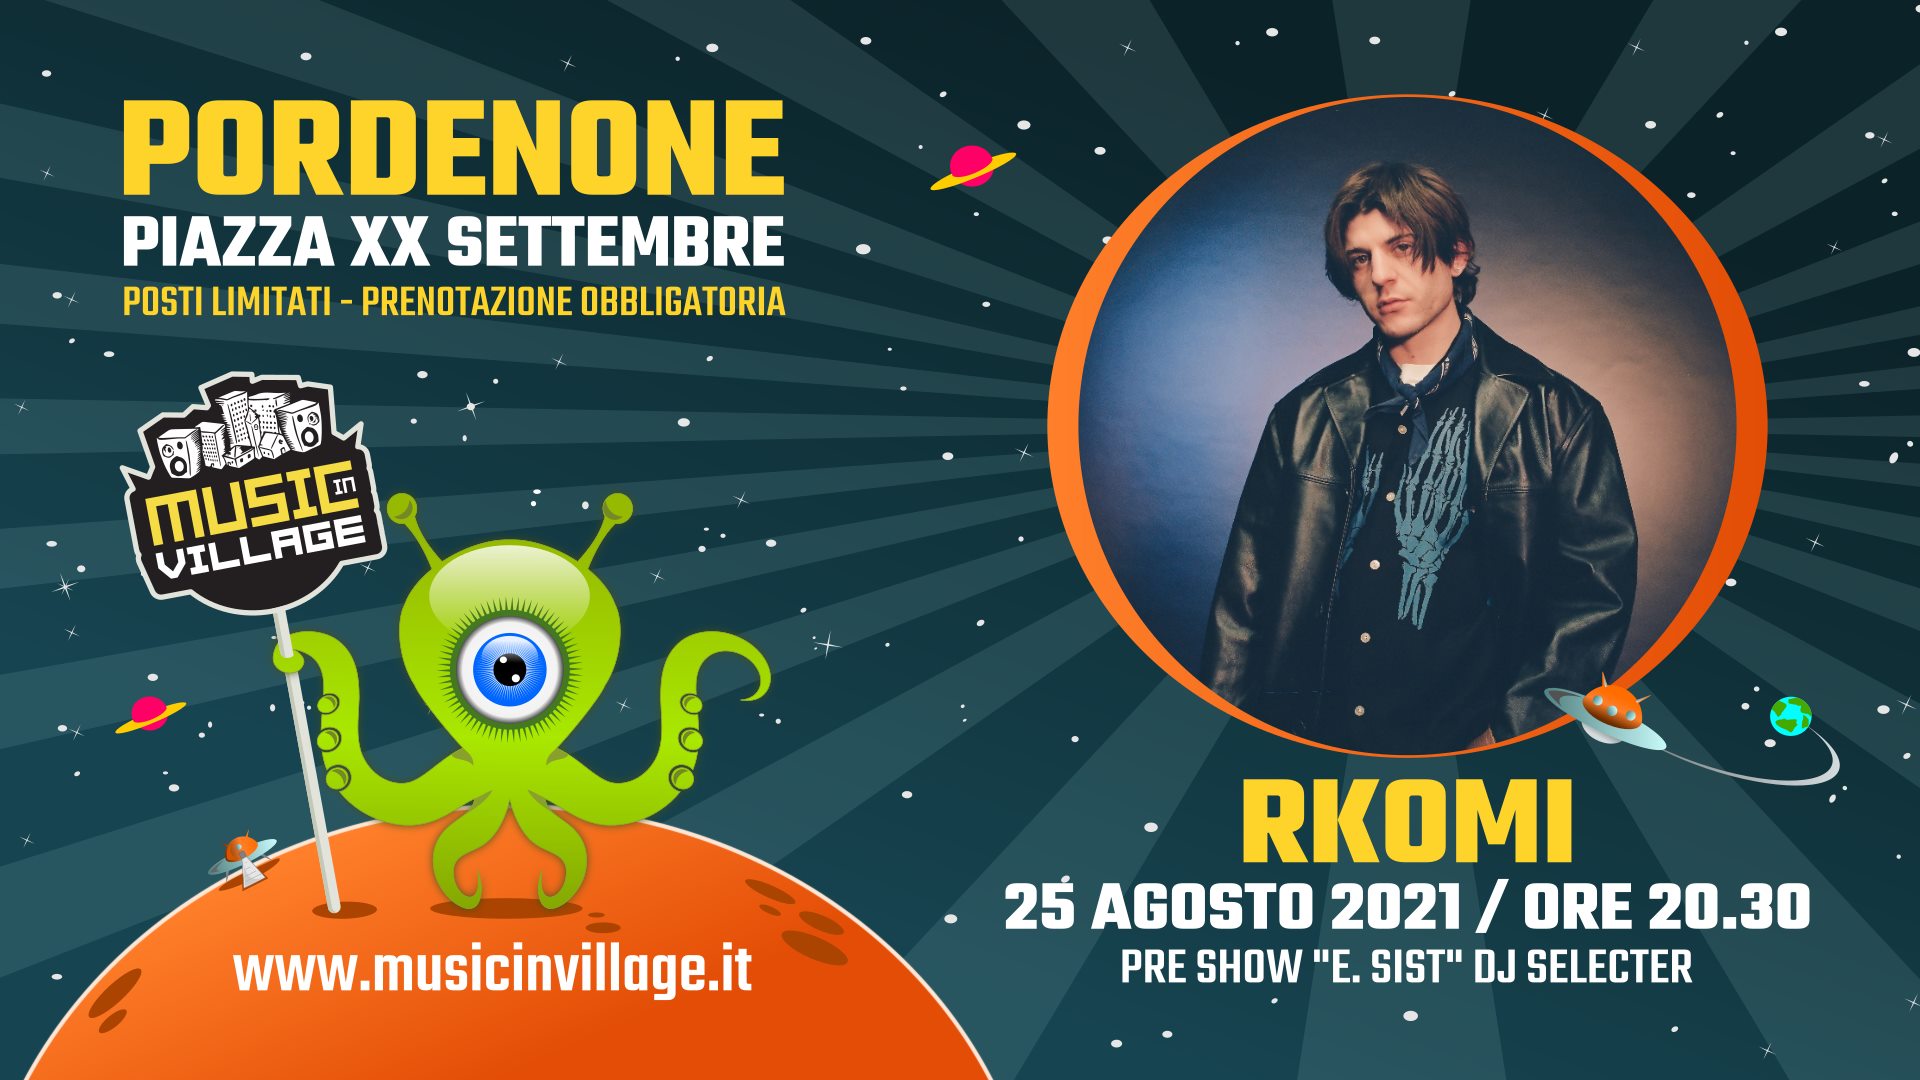 RKOMI - Music in Village Pordenone - EventiFVG.it